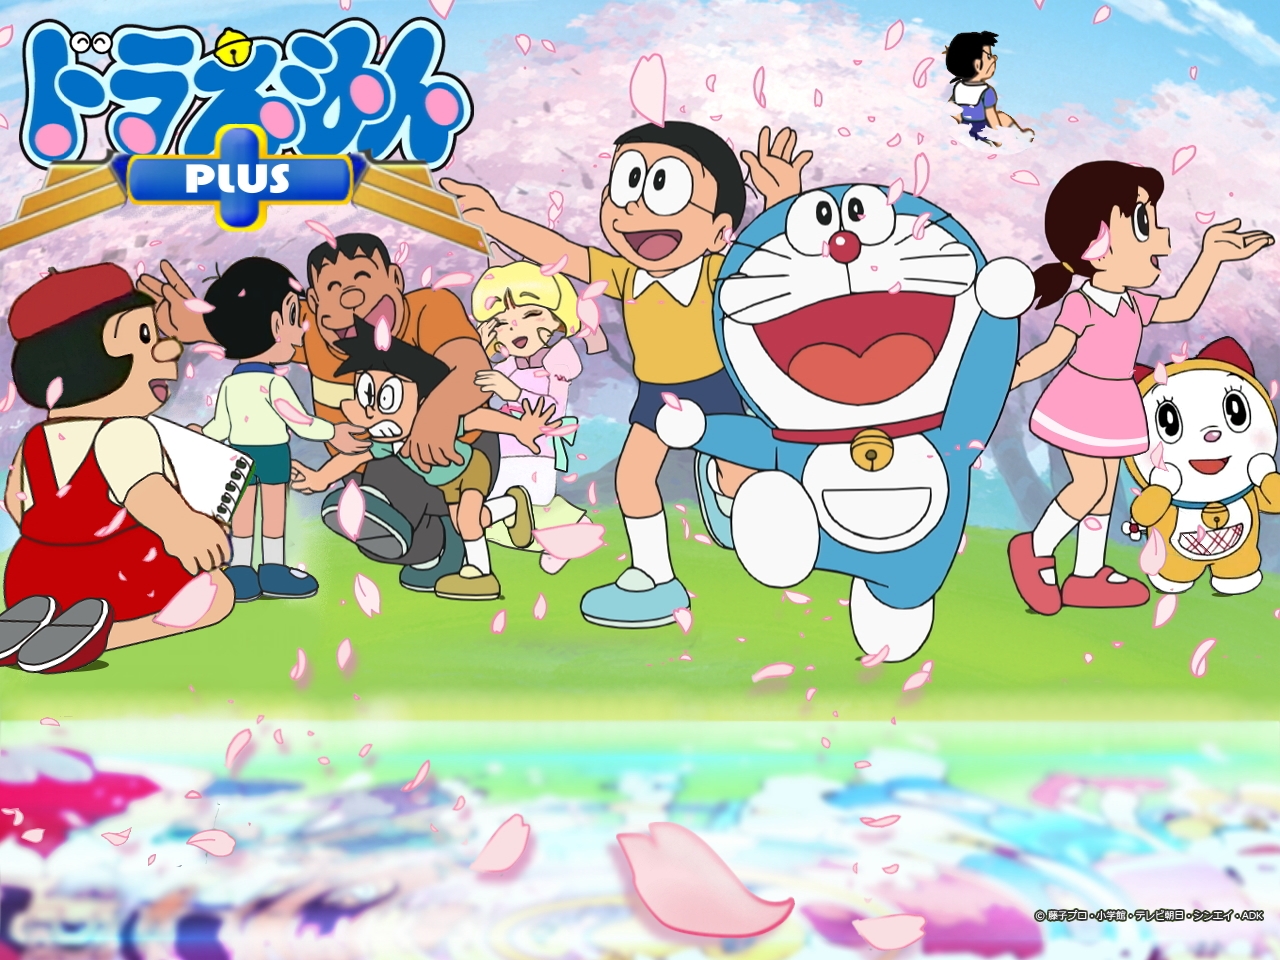 Anime là thể loại phim hoạt hình được yêu thích rộng rãi trên thế giới, và Doraemon - chú mèo máy đáng yêu và thông minh là một trong những nhân vật được yêu thích của thể loại này. Hình nền Anime Doraemon sẽ đem đến cho bạn một cảm giác thú vị và phấn khích. Hãy xem ngay những hình ảnh tuyệt đẹp này để trải nghiệm một thế giới đầy màu sắc và ấn tượng.